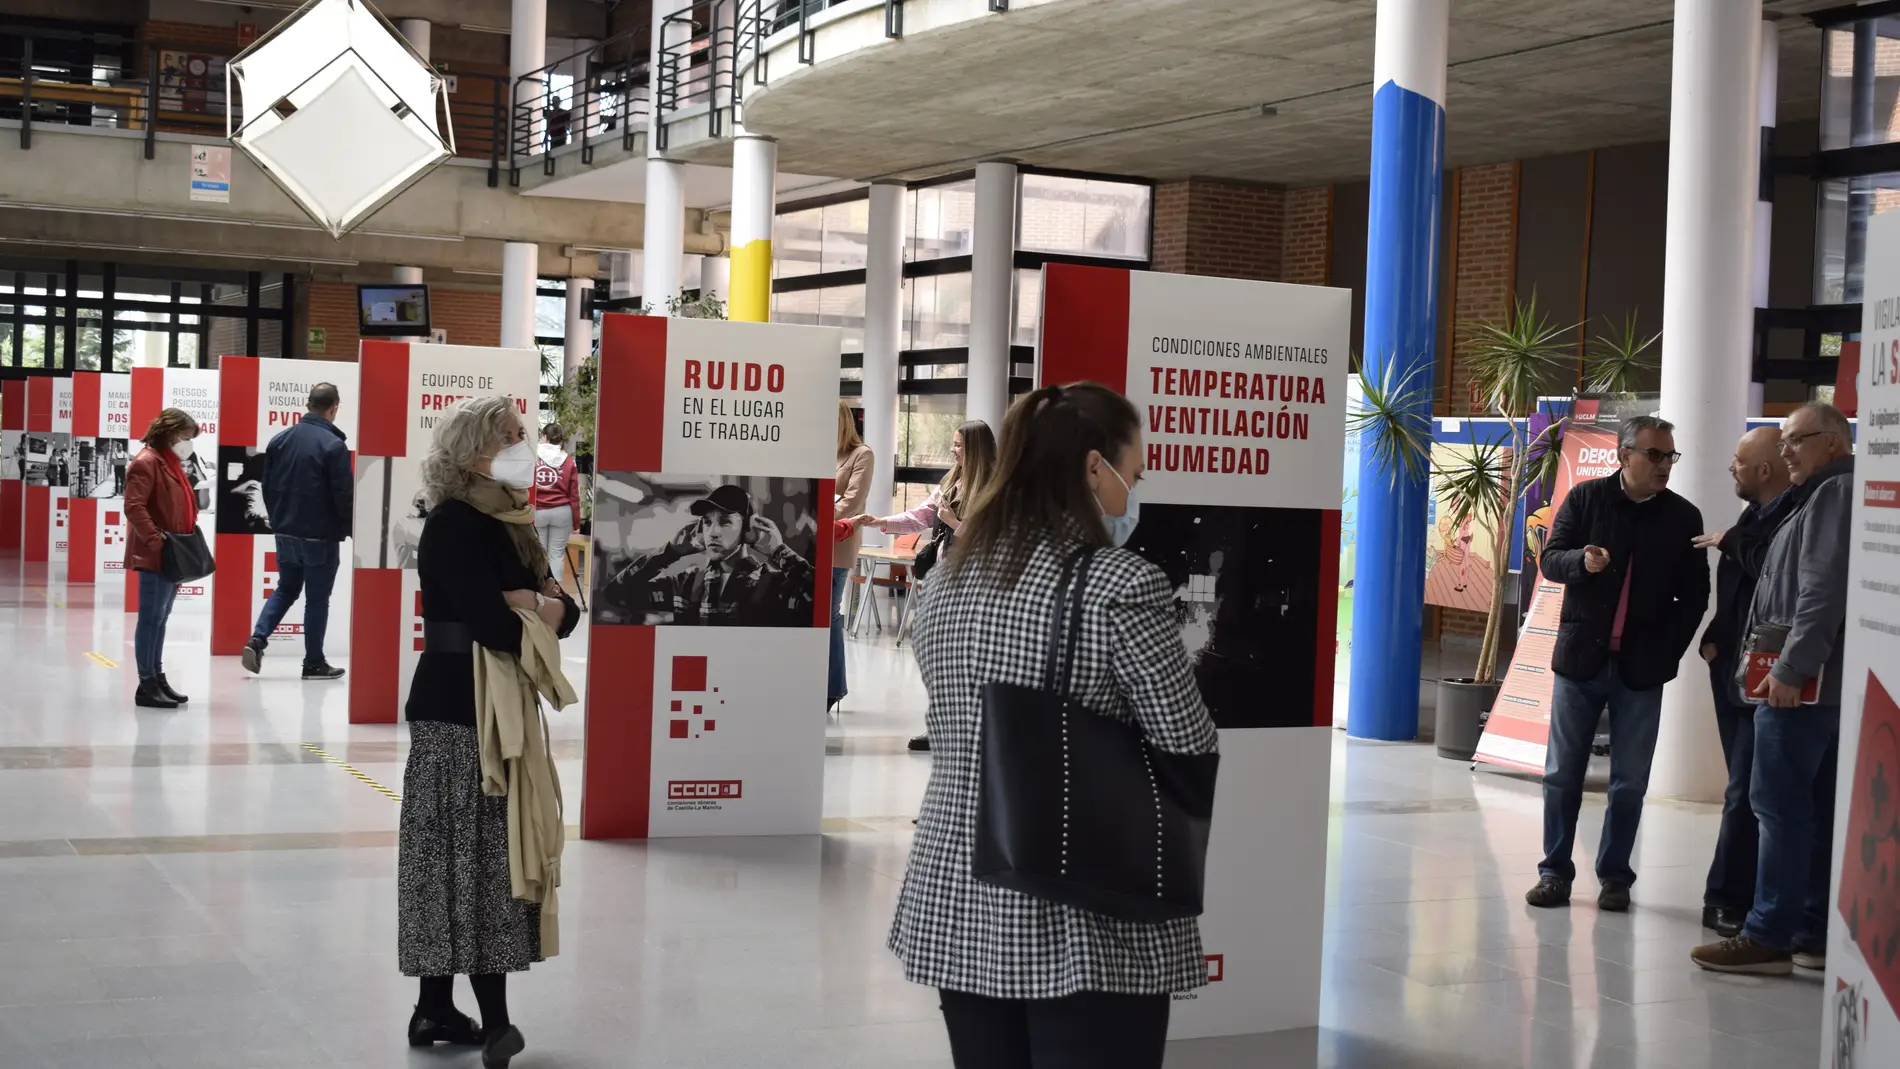 El Campus de Albacete acoge una exposición sobre cultura preventiva y salud laboral